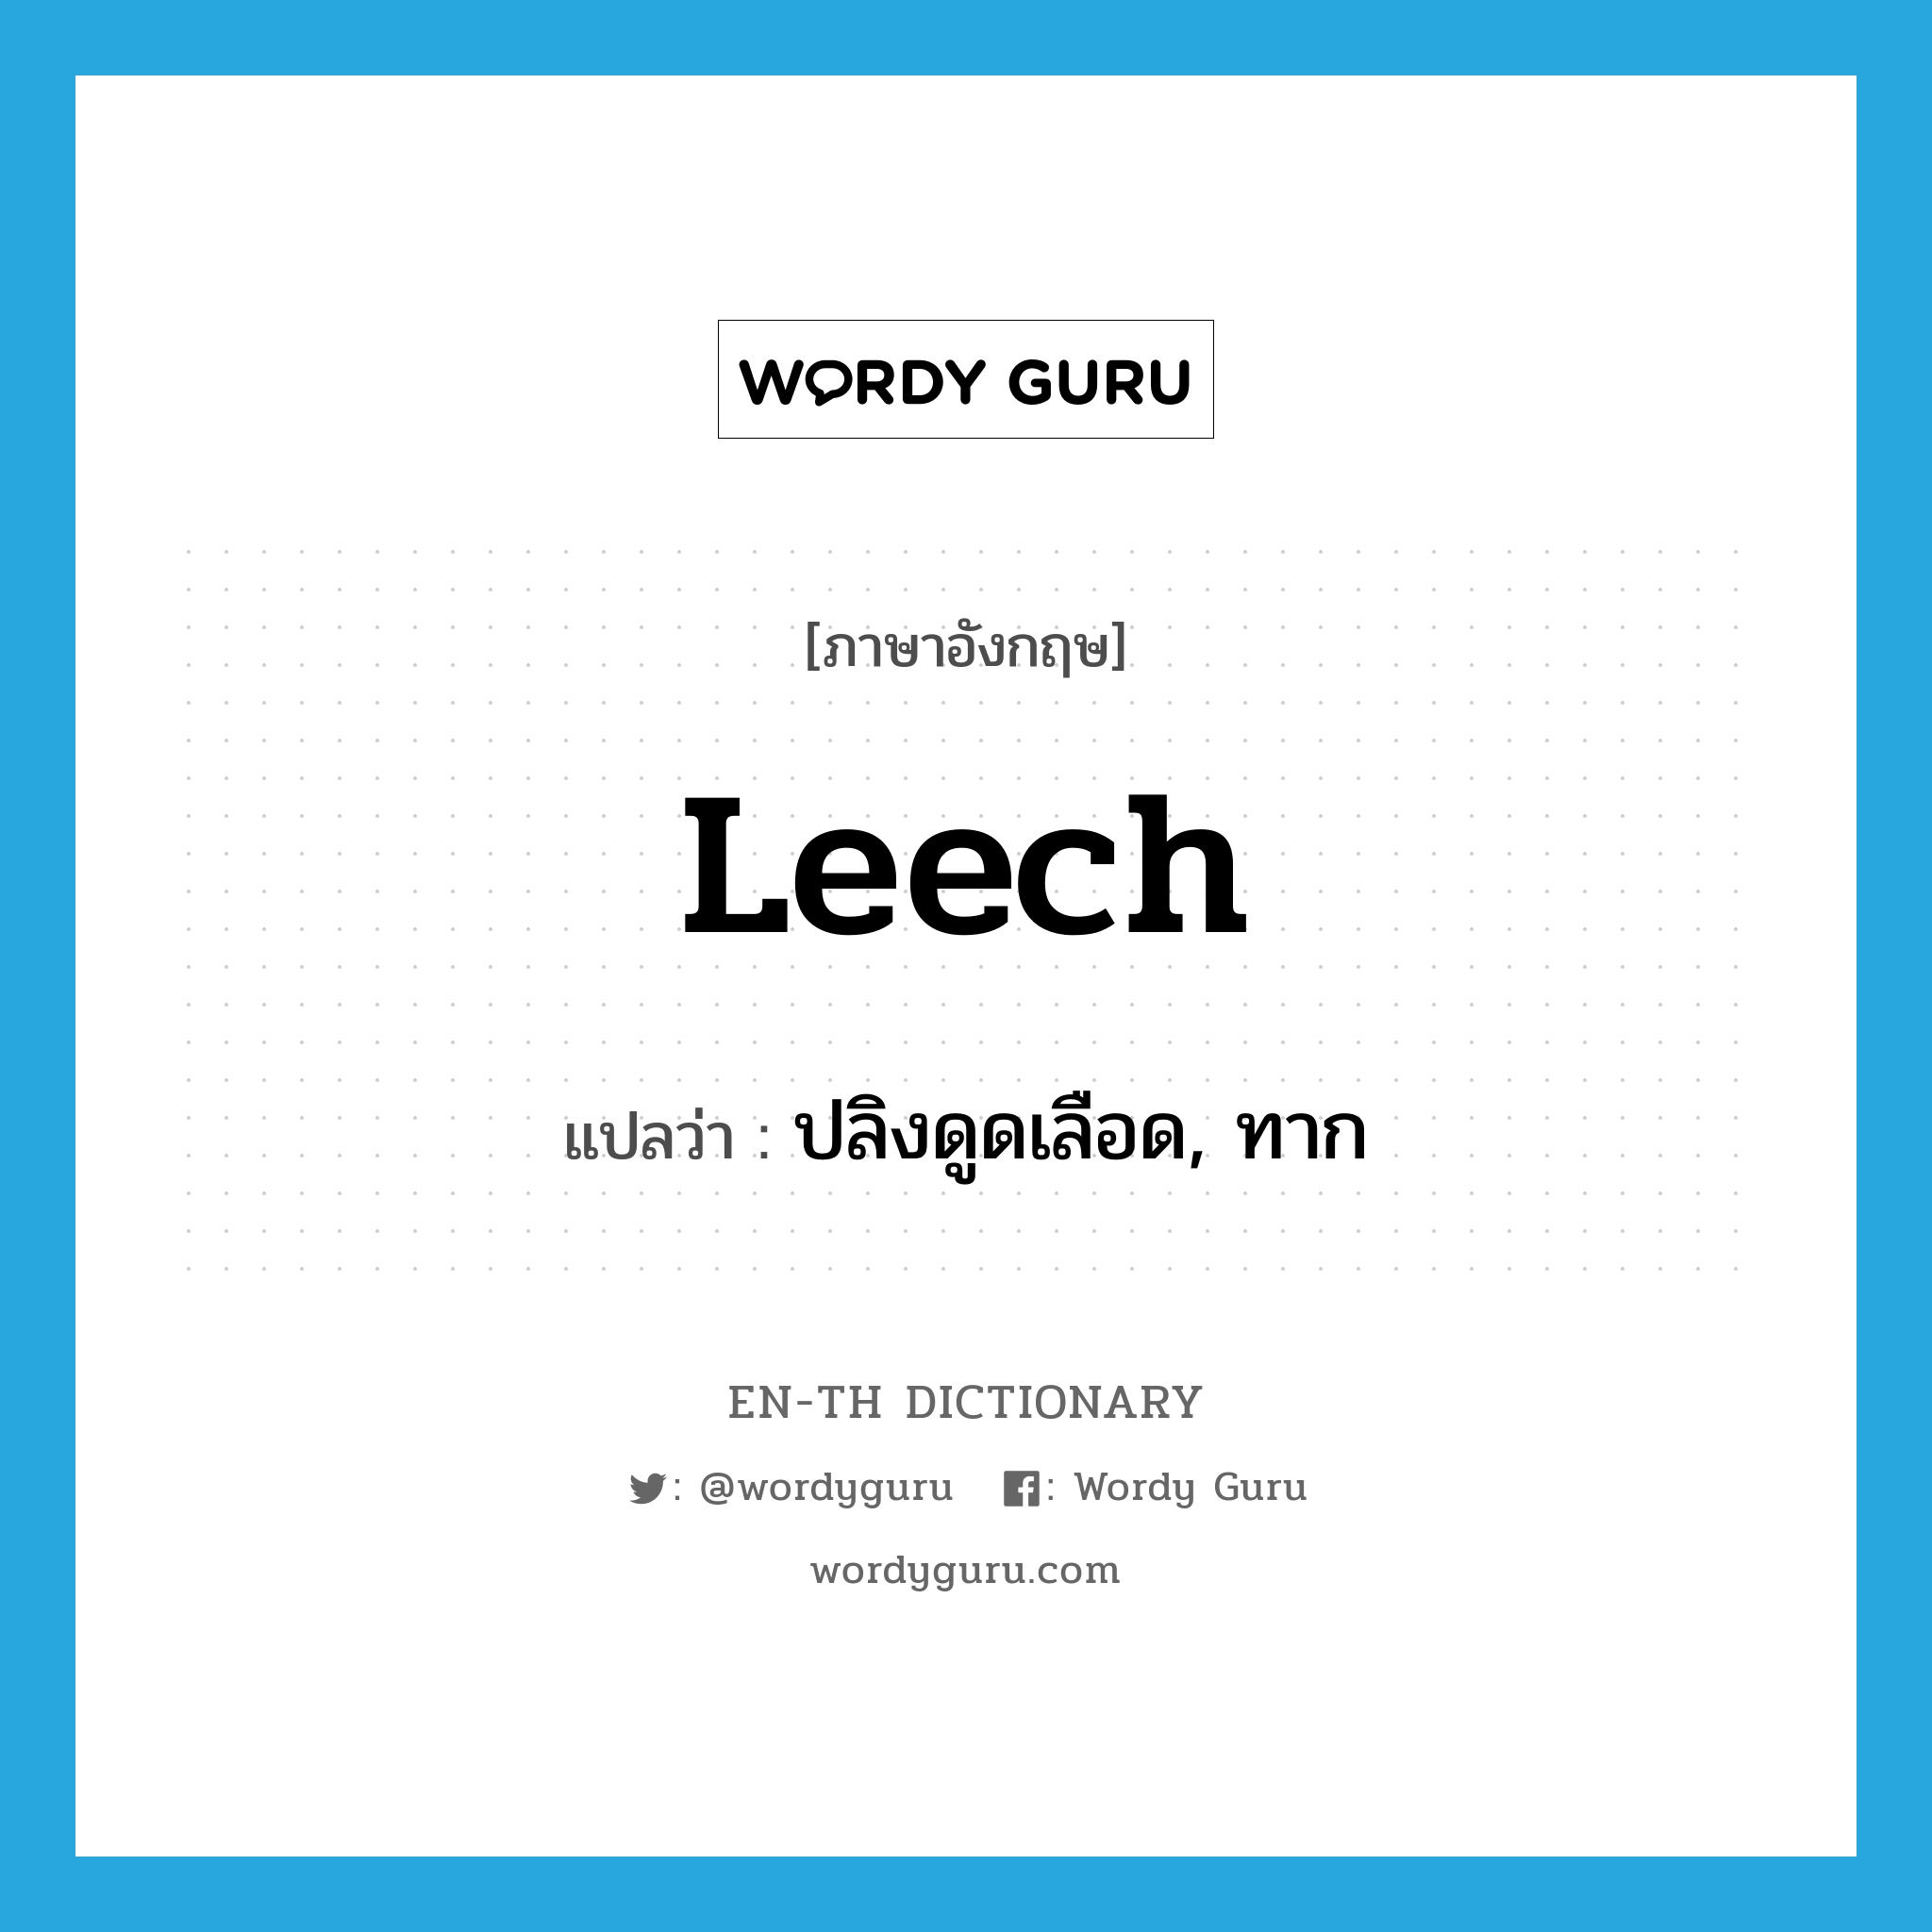 leech แปลว่า?, คำศัพท์ภาษาอังกฤษ leech แปลว่า ปลิงดูดเลือด, ทาก ประเภท N หมวด N